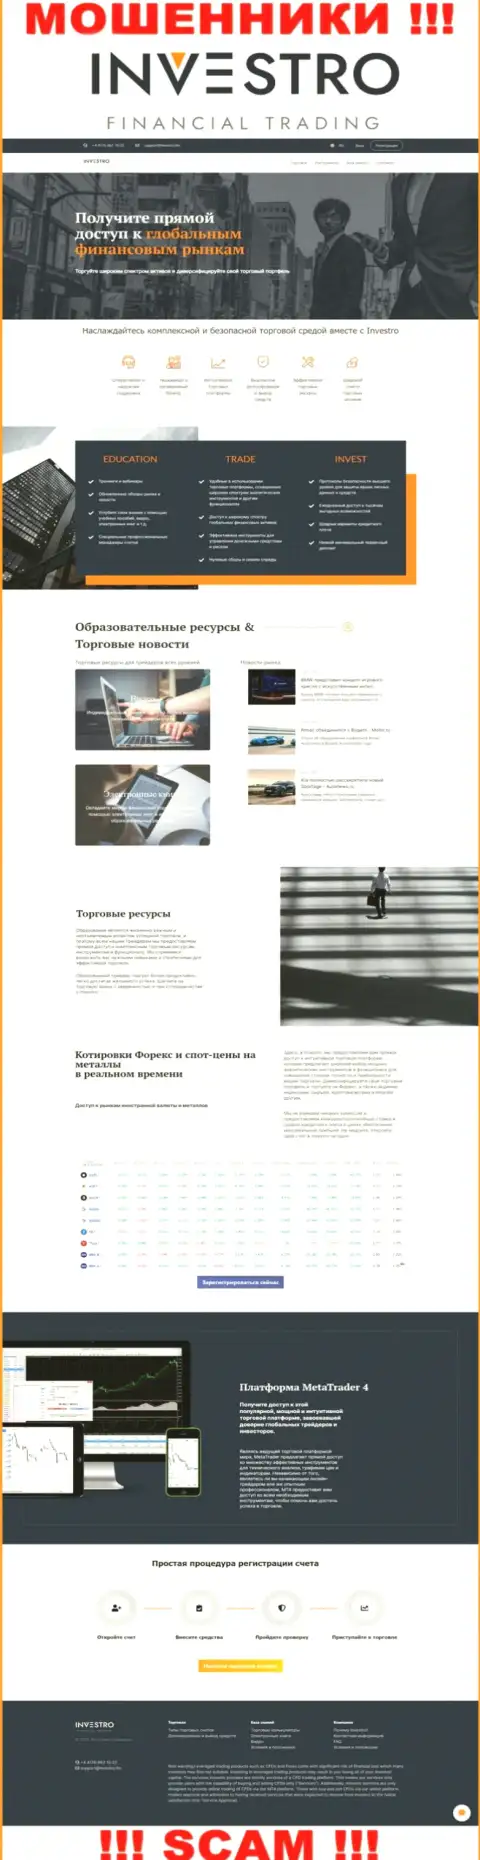 Скрин официального веб-сайта Investro - Investro Fm